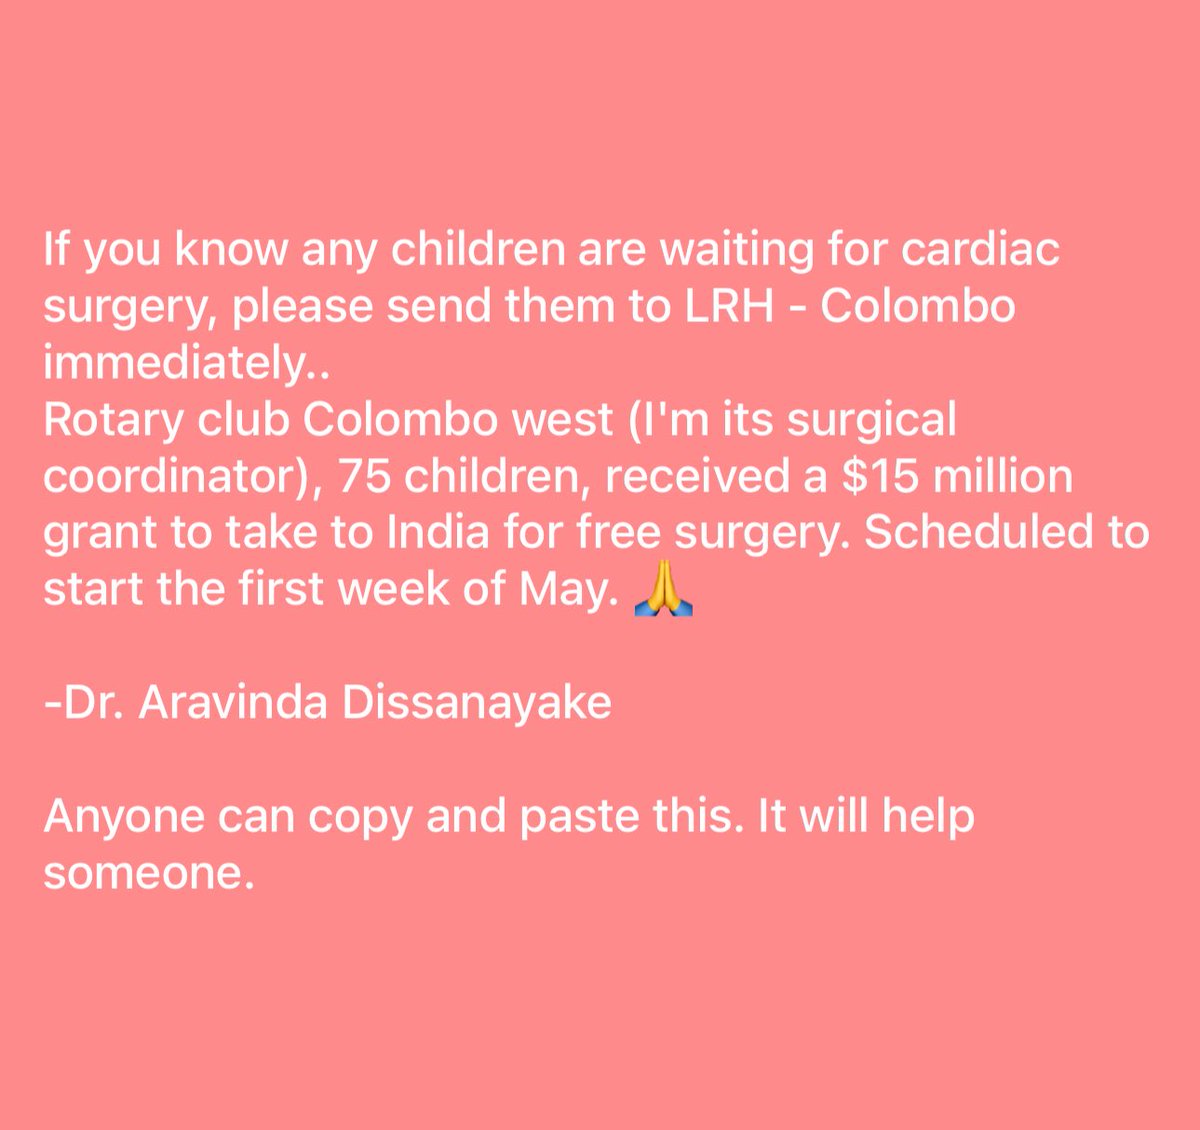 #Srilanka #CardiacSurgery #Surgery #Cardiac #Colombo #India #FreeSurgery